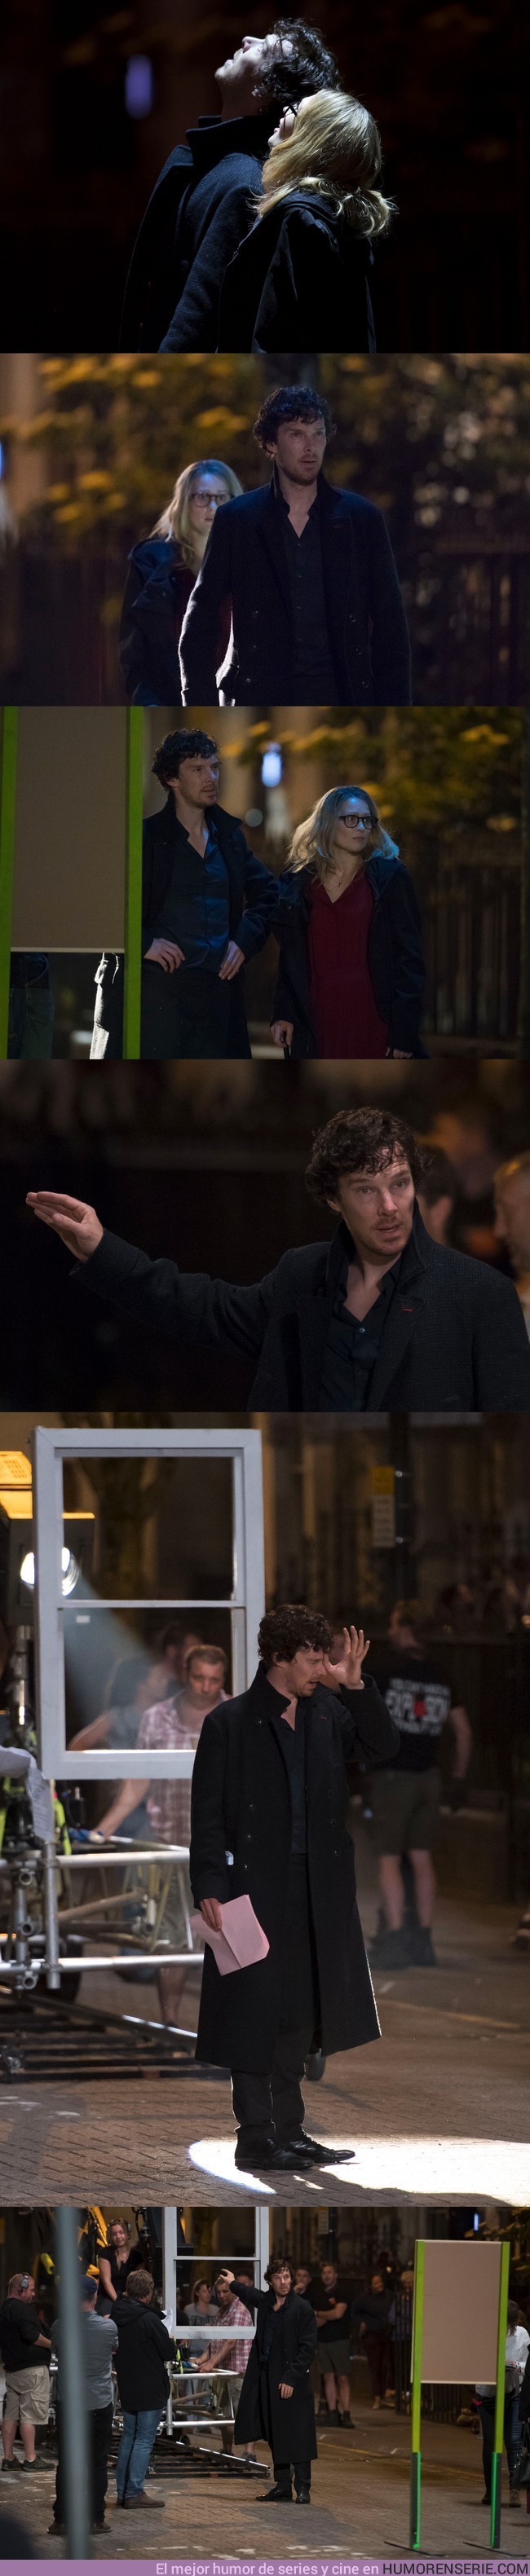 2936 - Nuevas imágenes de la cuarta temporada de Sherlock